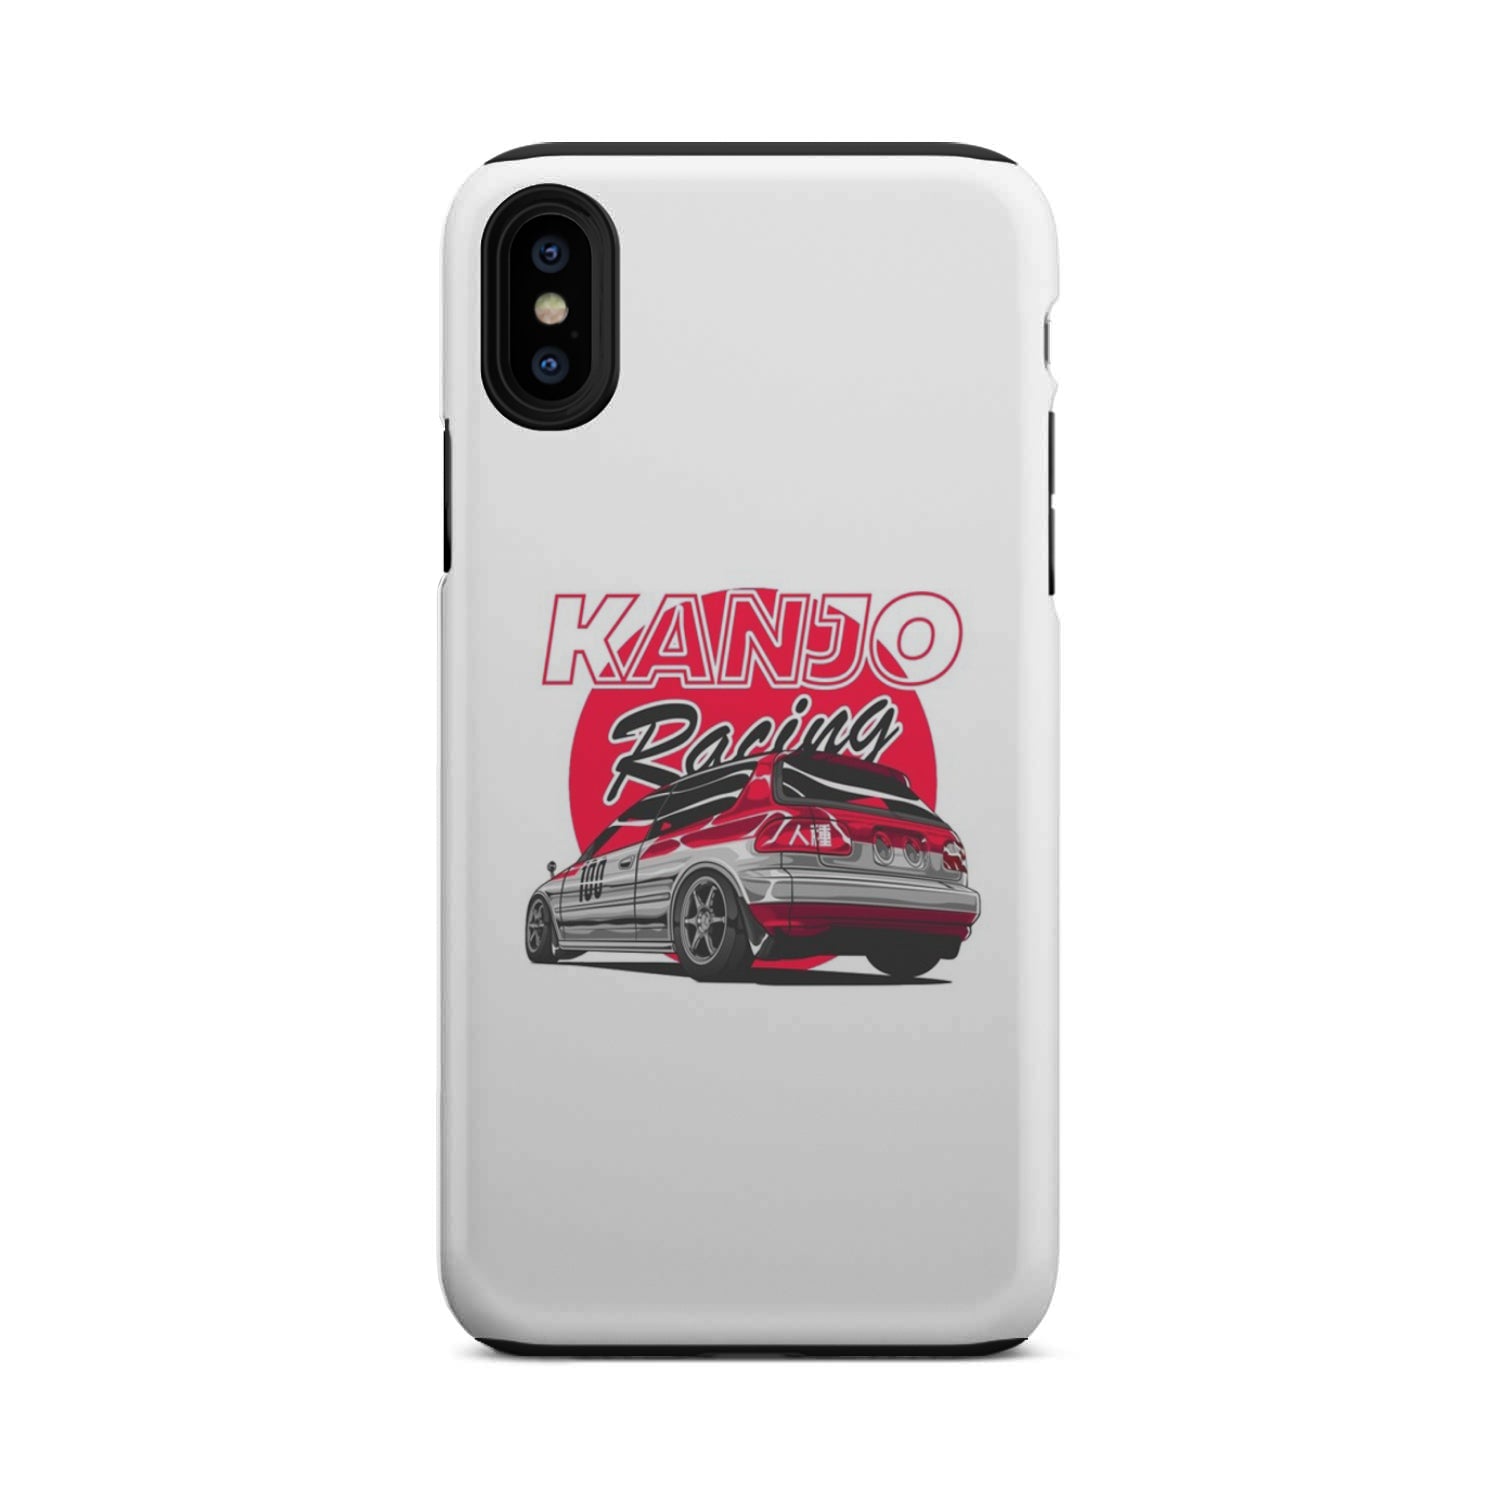 Kanjo Racing EG Phone Case